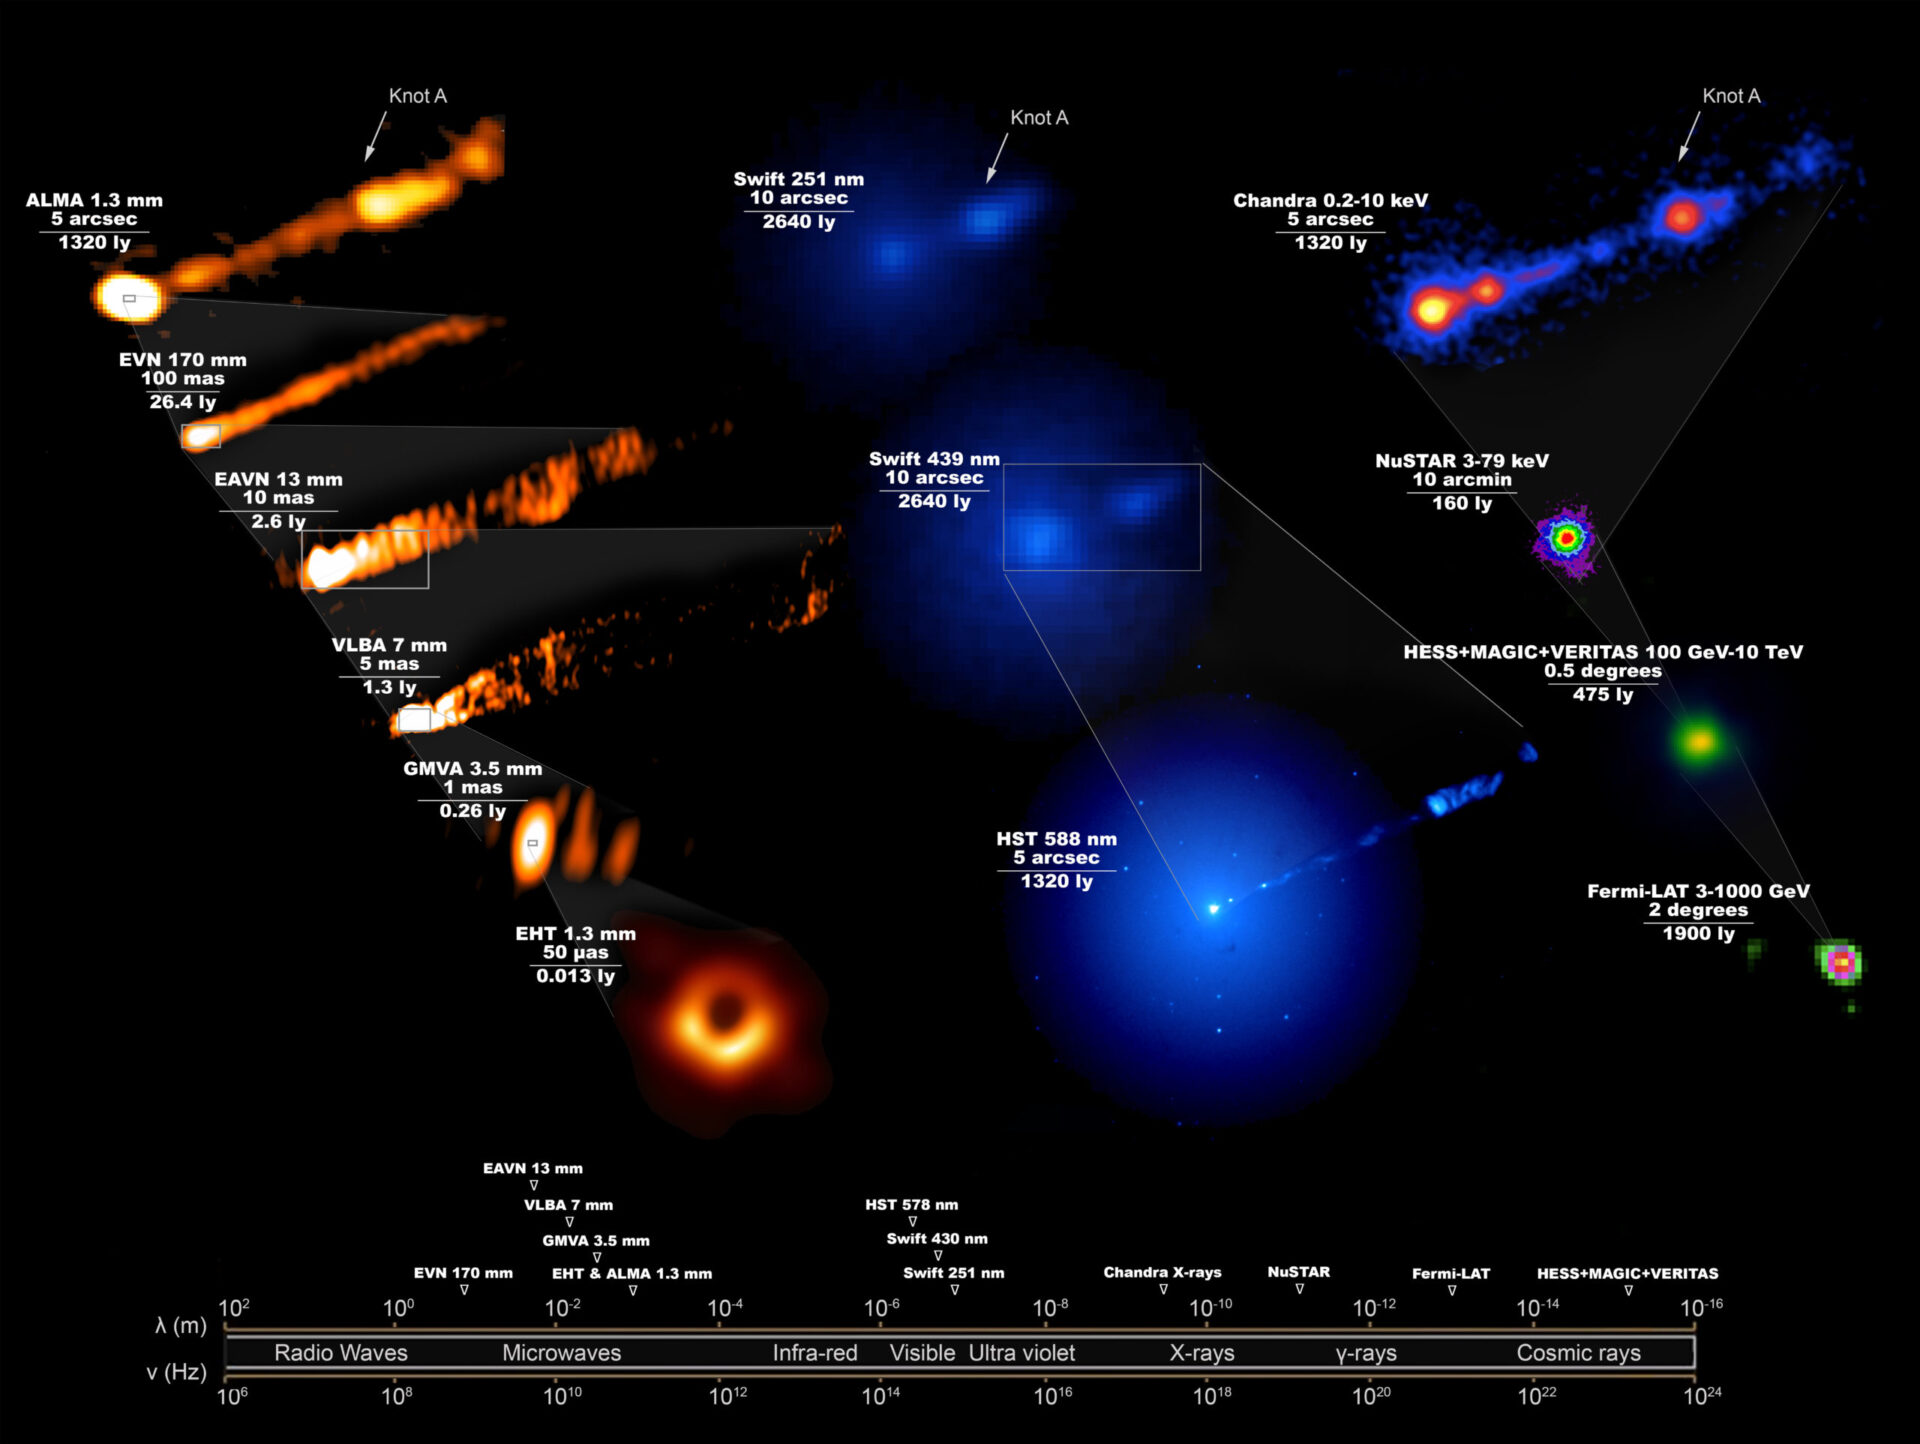 <p>Imagen compuesta que muestra cómo se veía el sistema M87, en todo el espectro electromagnético, durante la campaña de abril de 2017 del Event Horizon Telescope para tomar la primera imagen icónica de un agujero negro. Esta imagen, que requiere 19 instalaciones diferentes en la Tierra y en el espacio, revela las enormes escalas abarcadas por el agujero negro y su chorro que apunta hacia adelante, lanzado justo fuera del horizonte de eventos y que abarca toda la galaxia. La parte superior izquierda de la figura es una imagen tomada por ALMA, que muestra el chorro de mayor escala observado en la misma escala que la imagen visible tomada por el Telescopio Espacial Hubble y la imagen de rayos X de Chandra (parte superior derecha). | Crédito: Grupo de trabajo científico de longitud de onda múltiple de EHT; la Colaboración EHT; ALMA (ESO / NAOJ / NRAO); el EVN; la Colaboración EAVN; VLBA (NRAO); el GMVA; el telescopio espacial Hubble; el Observatorio Swift de Neil Gehrels; el Observatorio de rayos X Chandra; telescopios espectroscópicos nucleares; la Colaboración Fermi-LAT; la colaboración H.E.S.S; la colaboración MAGIC; la colaboración VERITAS; NASA y ESA. Composición de J. C. Algaba</p>
